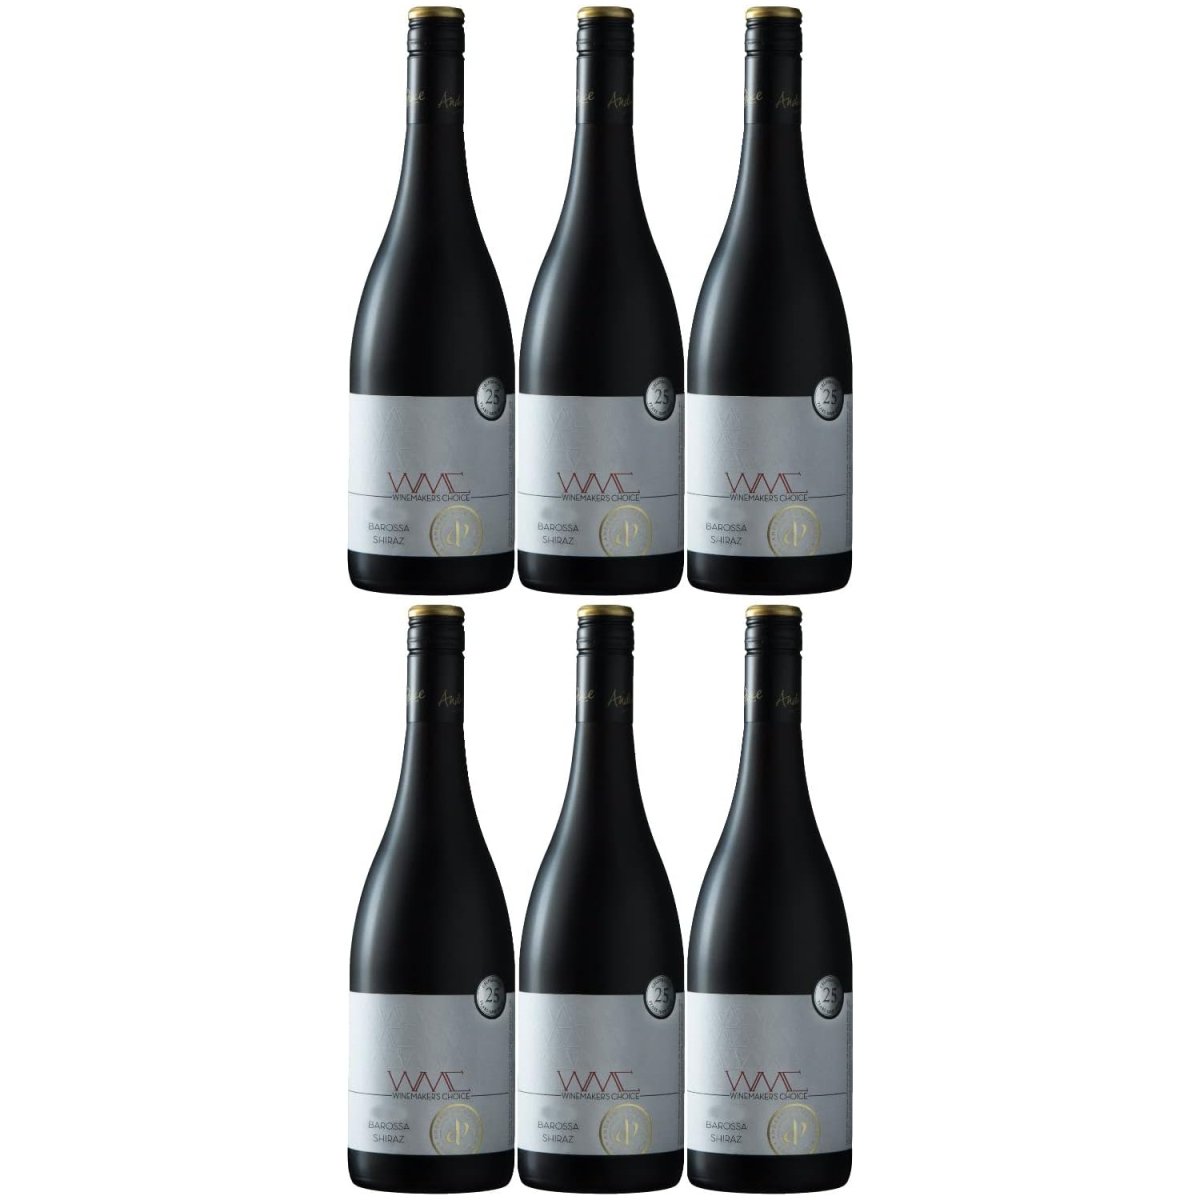 Winemaker's Choice Barossa Valley Shiraz Rotwein Wein trocken Australien (12 x 0,75l) - Versanel -